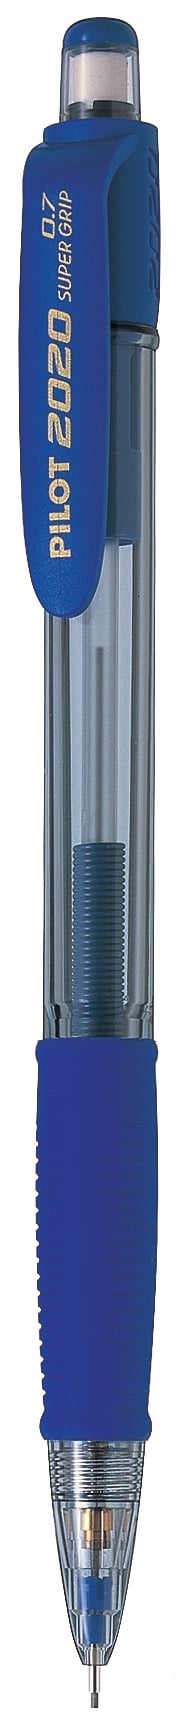 Stiftpenna Pilot Super Grip Shaker blå 0,7 13010004_1